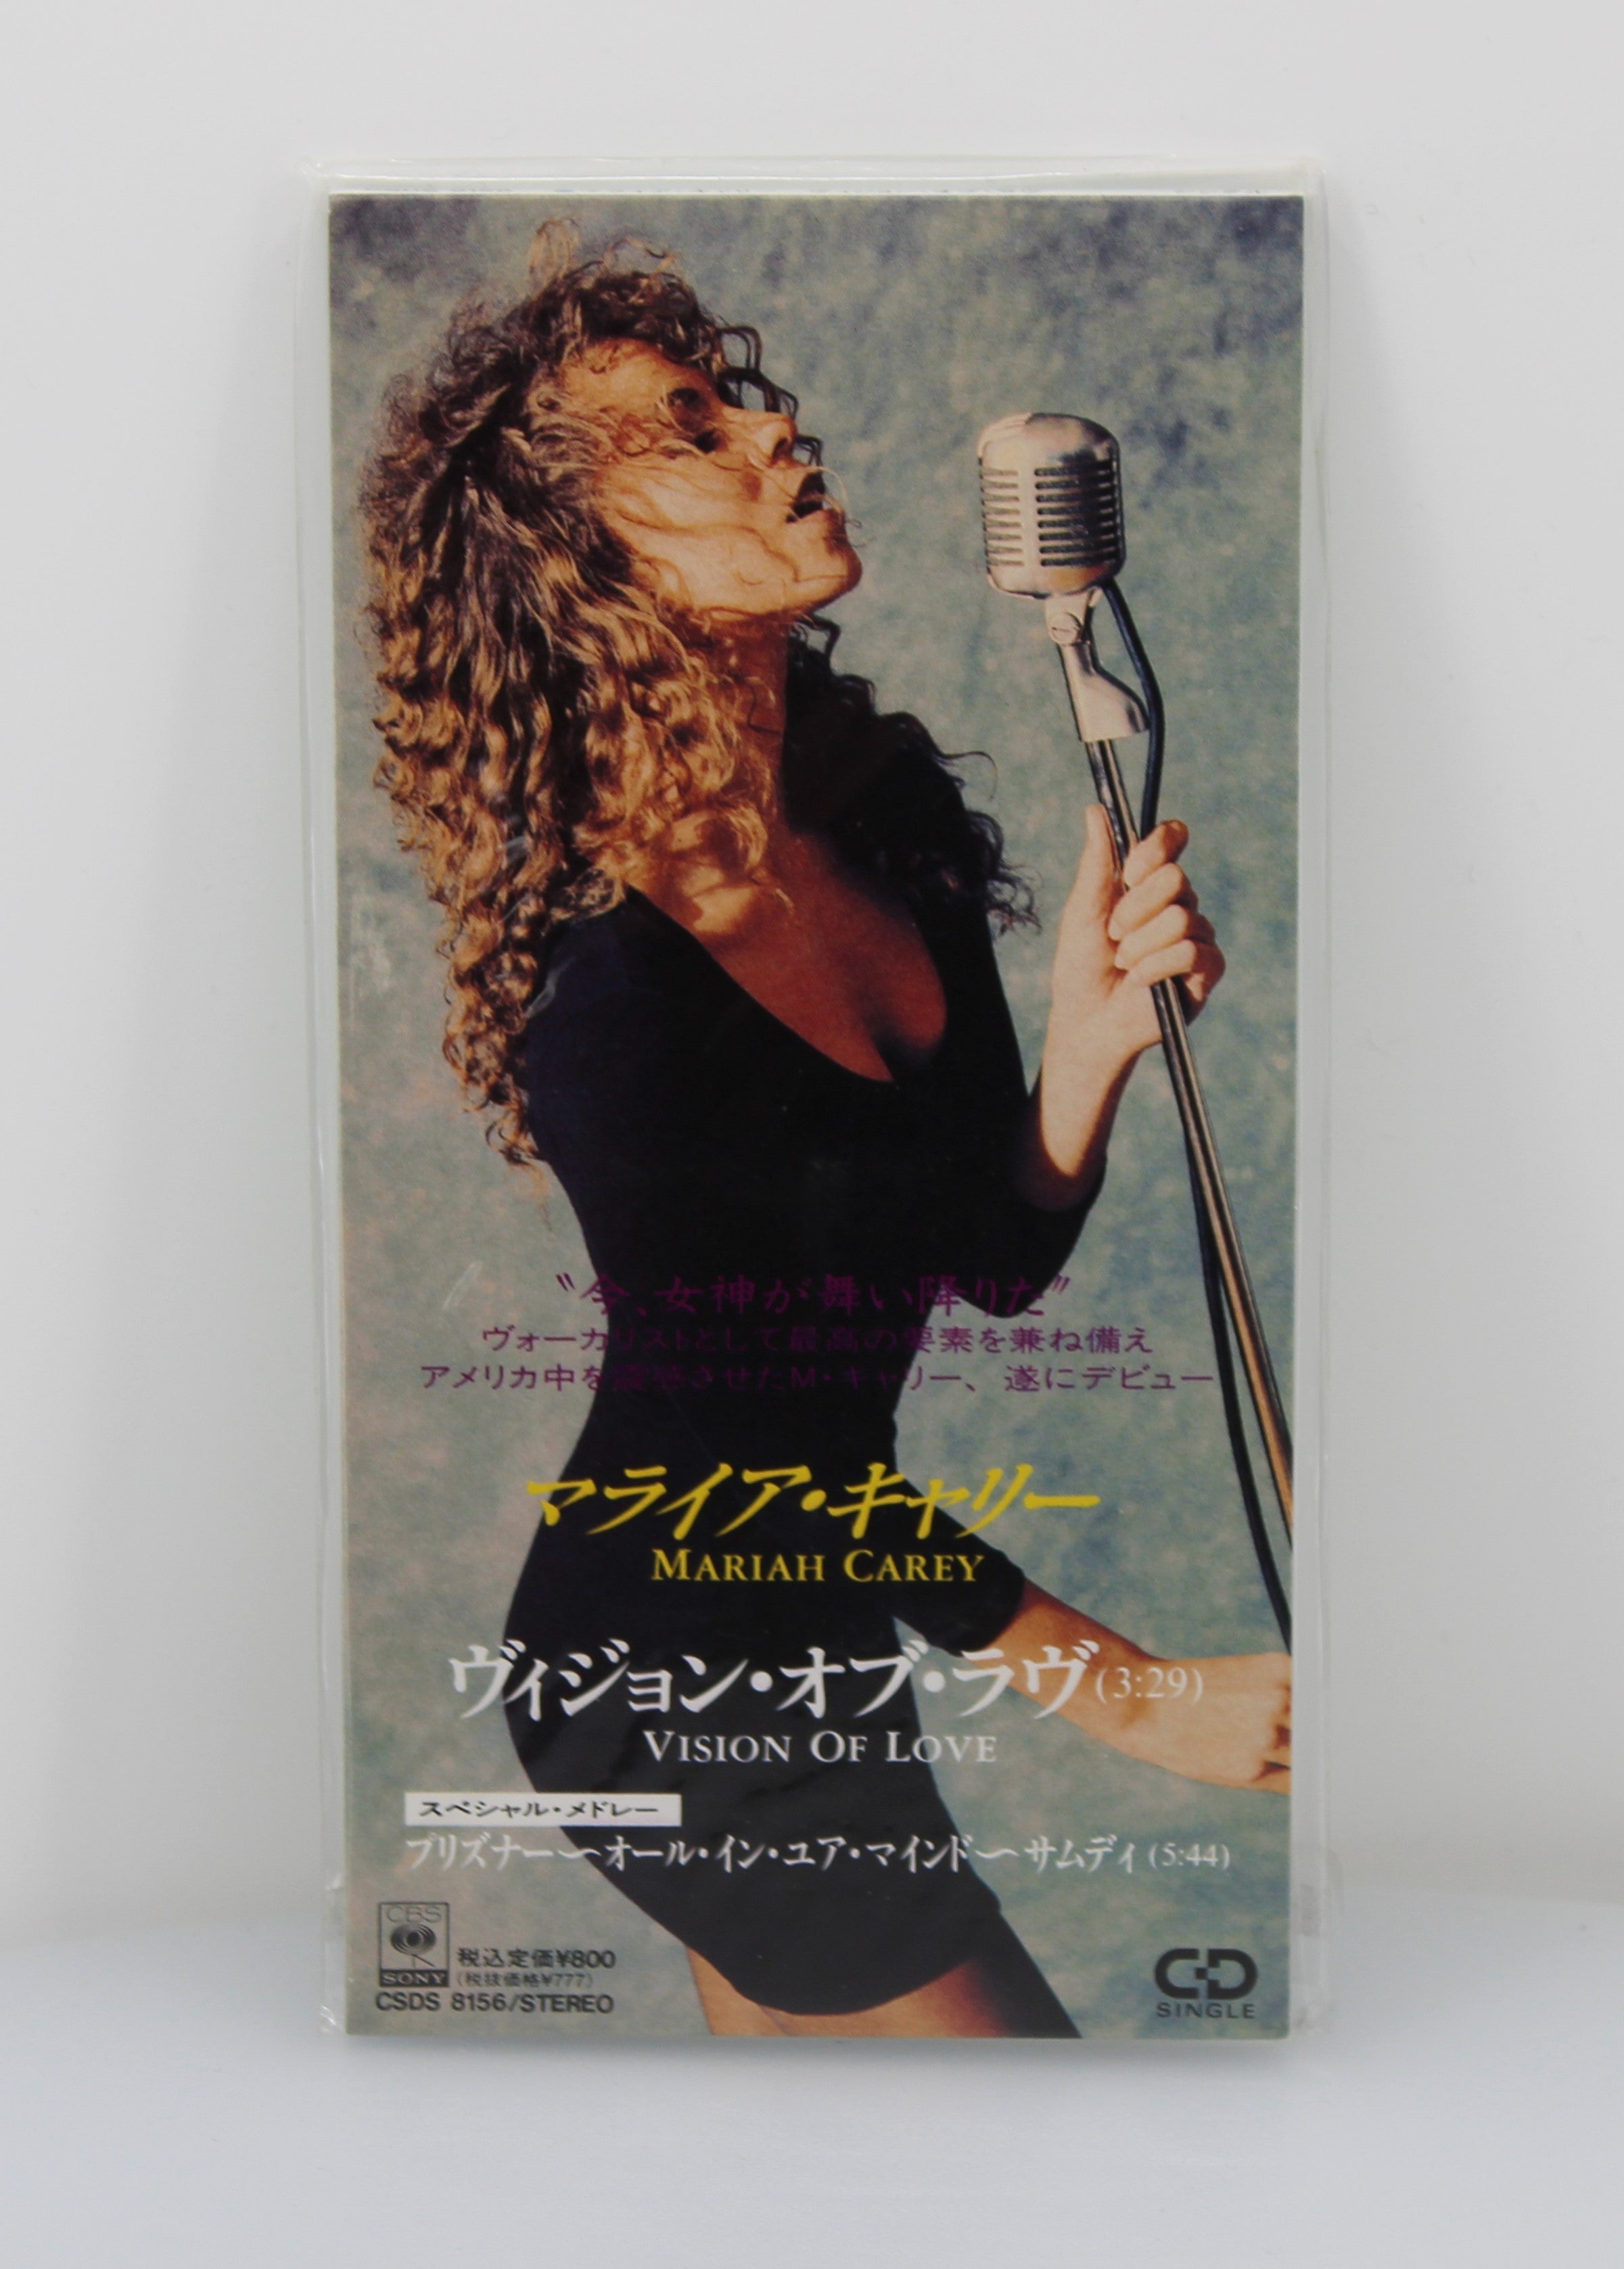 Mariah Carey – Vision Of Love, CD, Single, Mini, Japan 1990 